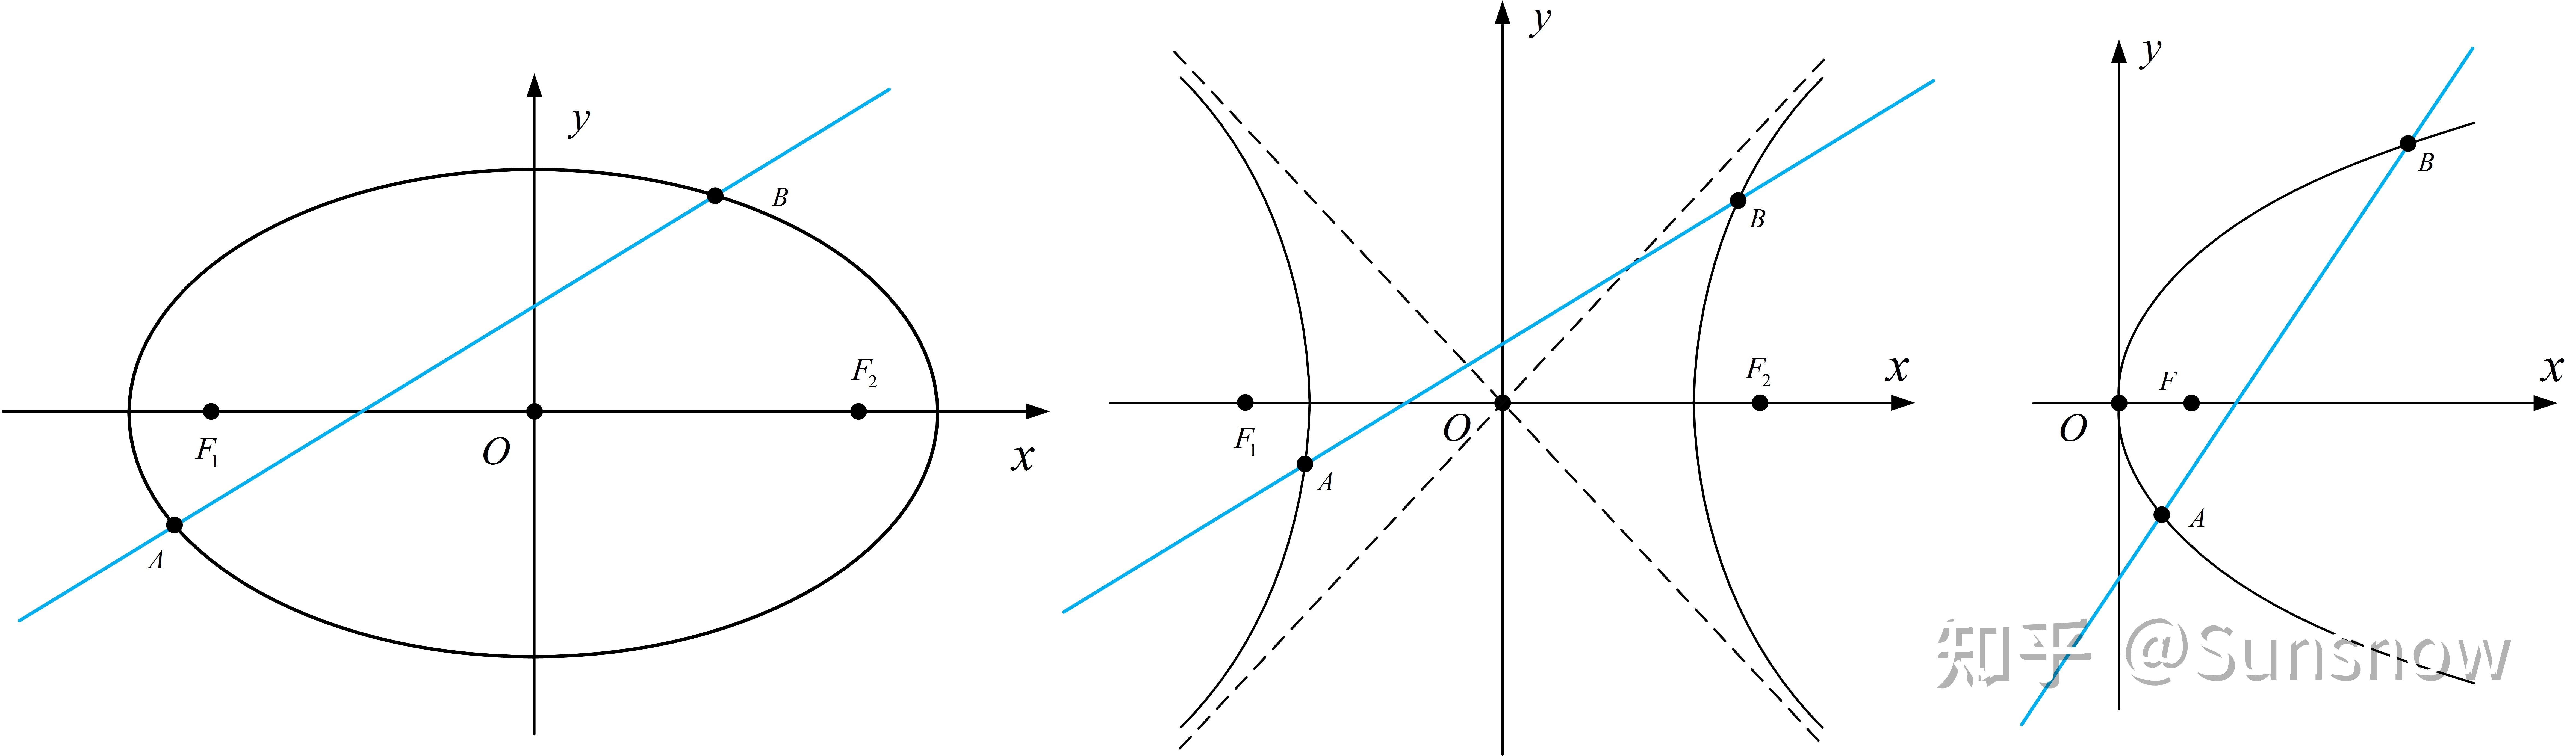 圆锥曲线6韦达定理在圆锥曲线中的应用